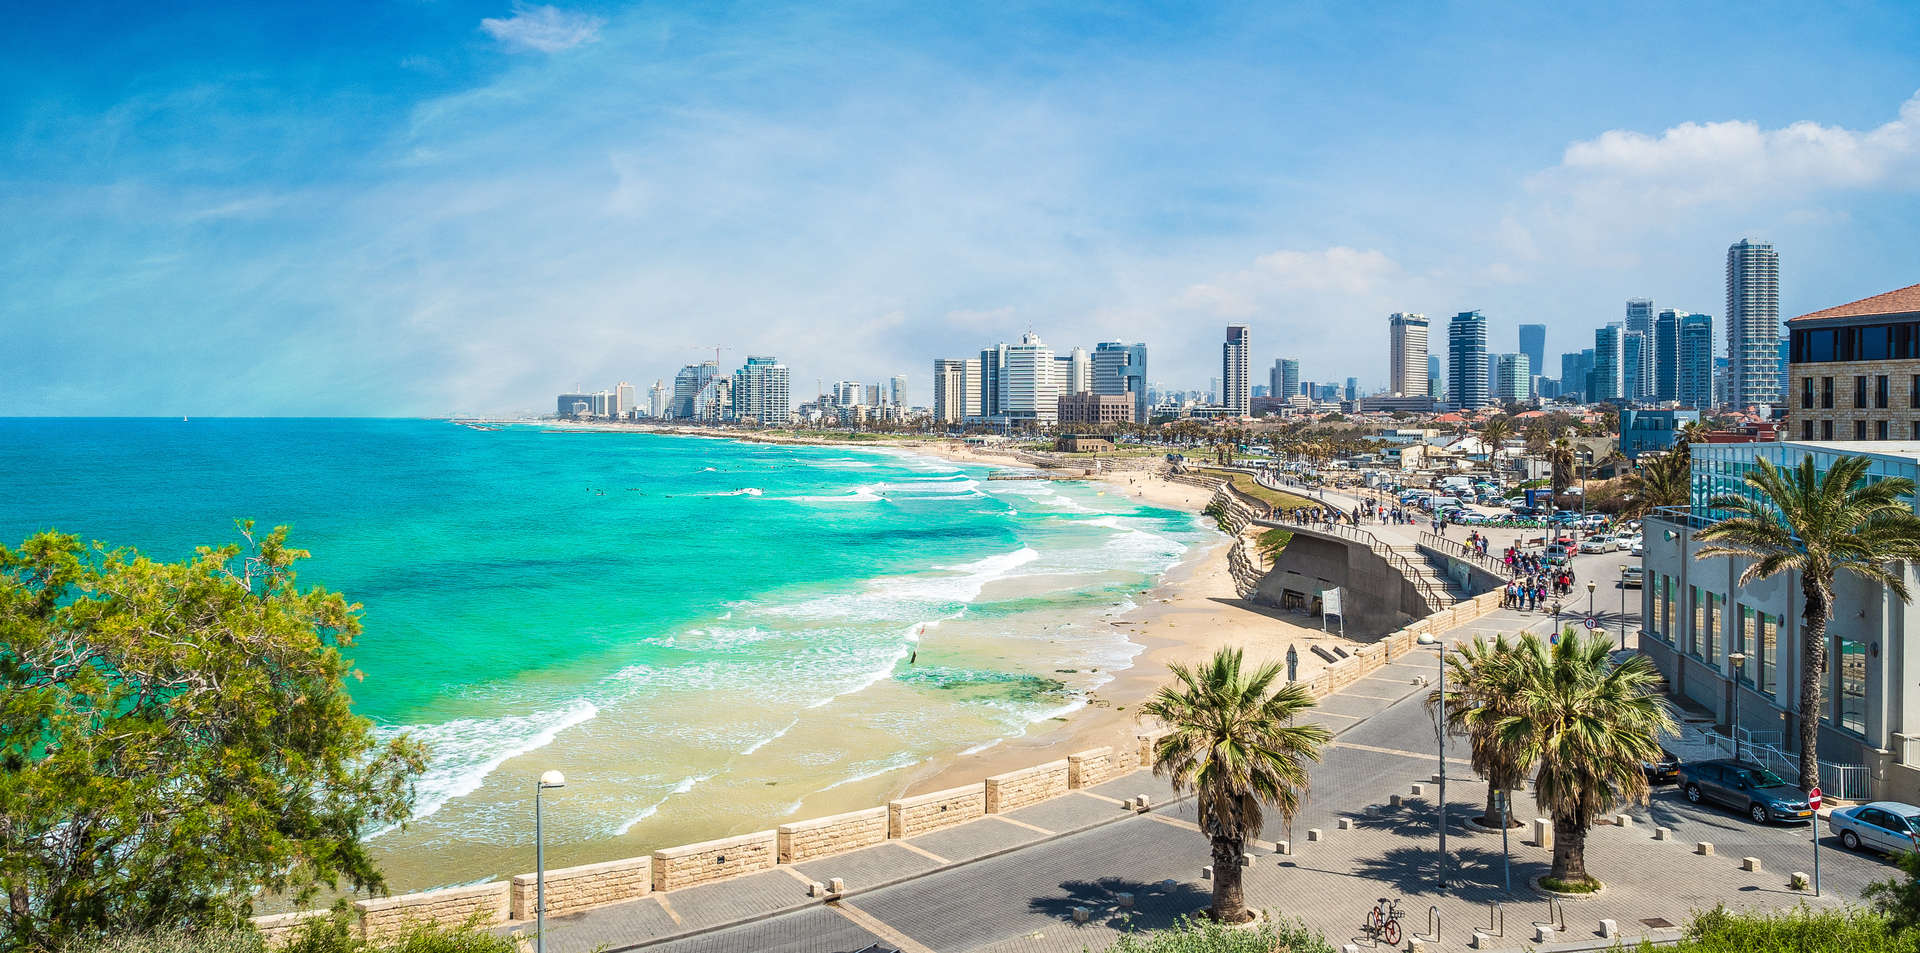 من شاطئ البحر إلى ممرات يافا المتعرجة، يأتي الربيع مبكراً بدرجة حرارة 20 درجة مئوية في معالم تل أبيب السياحية